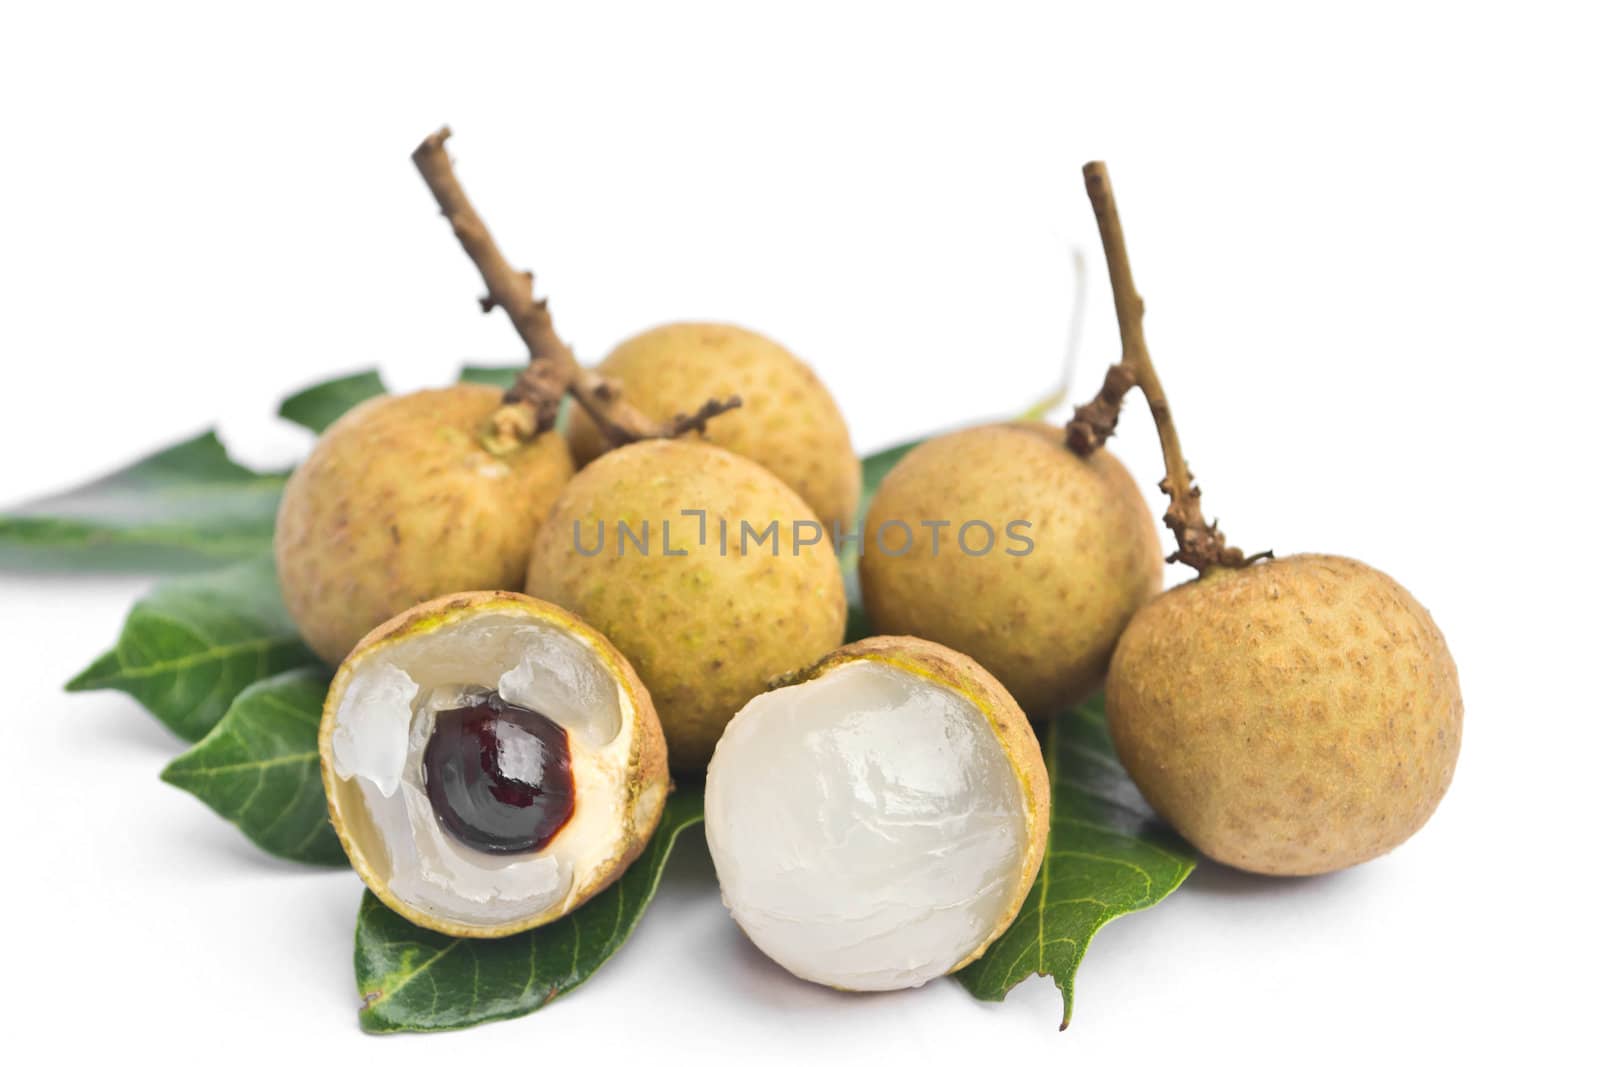 longan - fruit on white background 